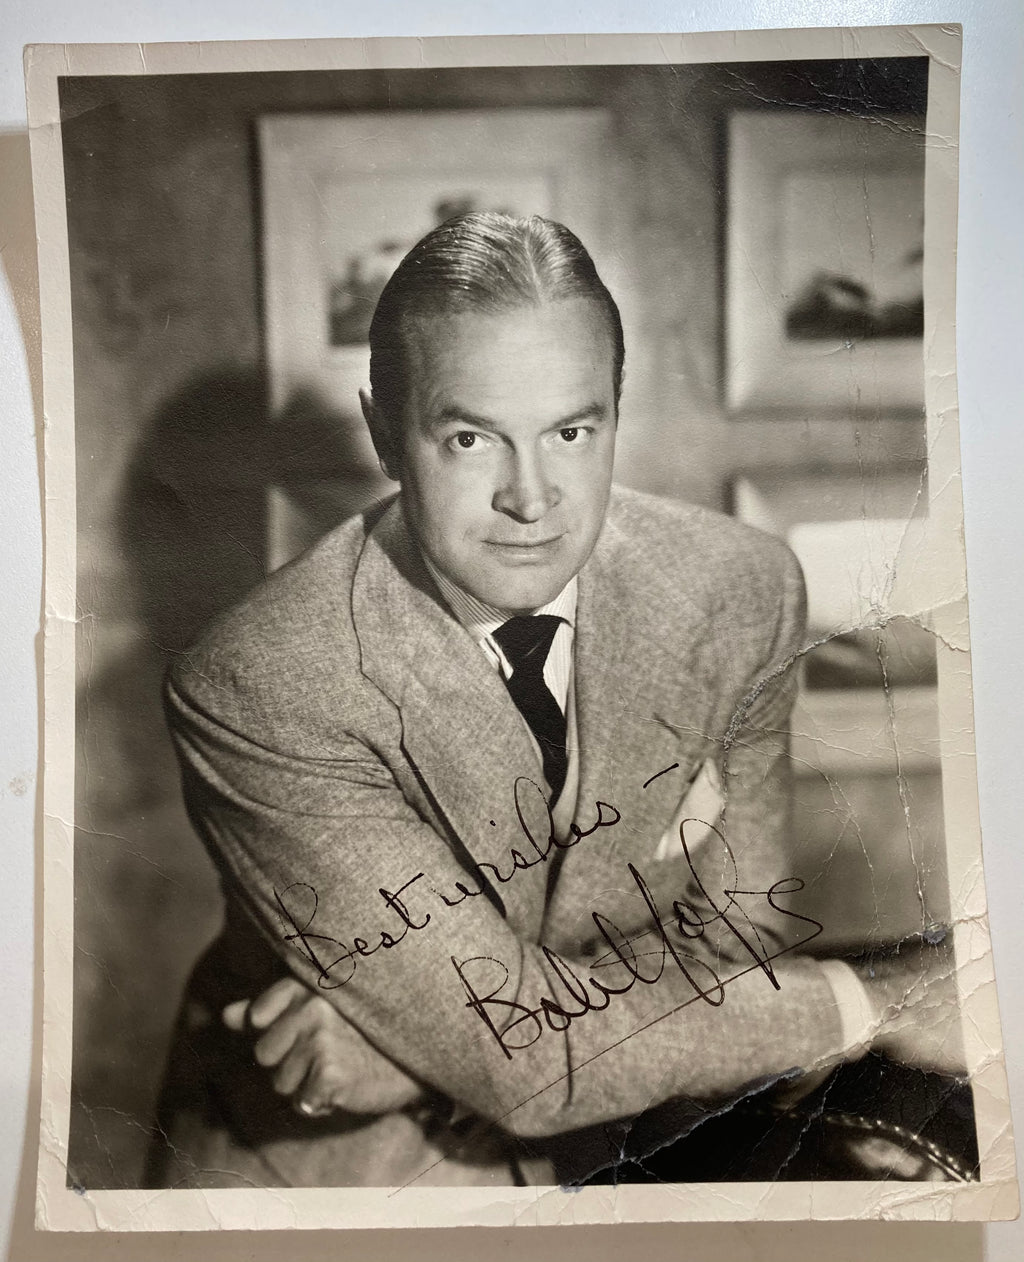 BOB HOPE Autographed 1940's-50's Photograph - $2K APR Value w/ CoA!